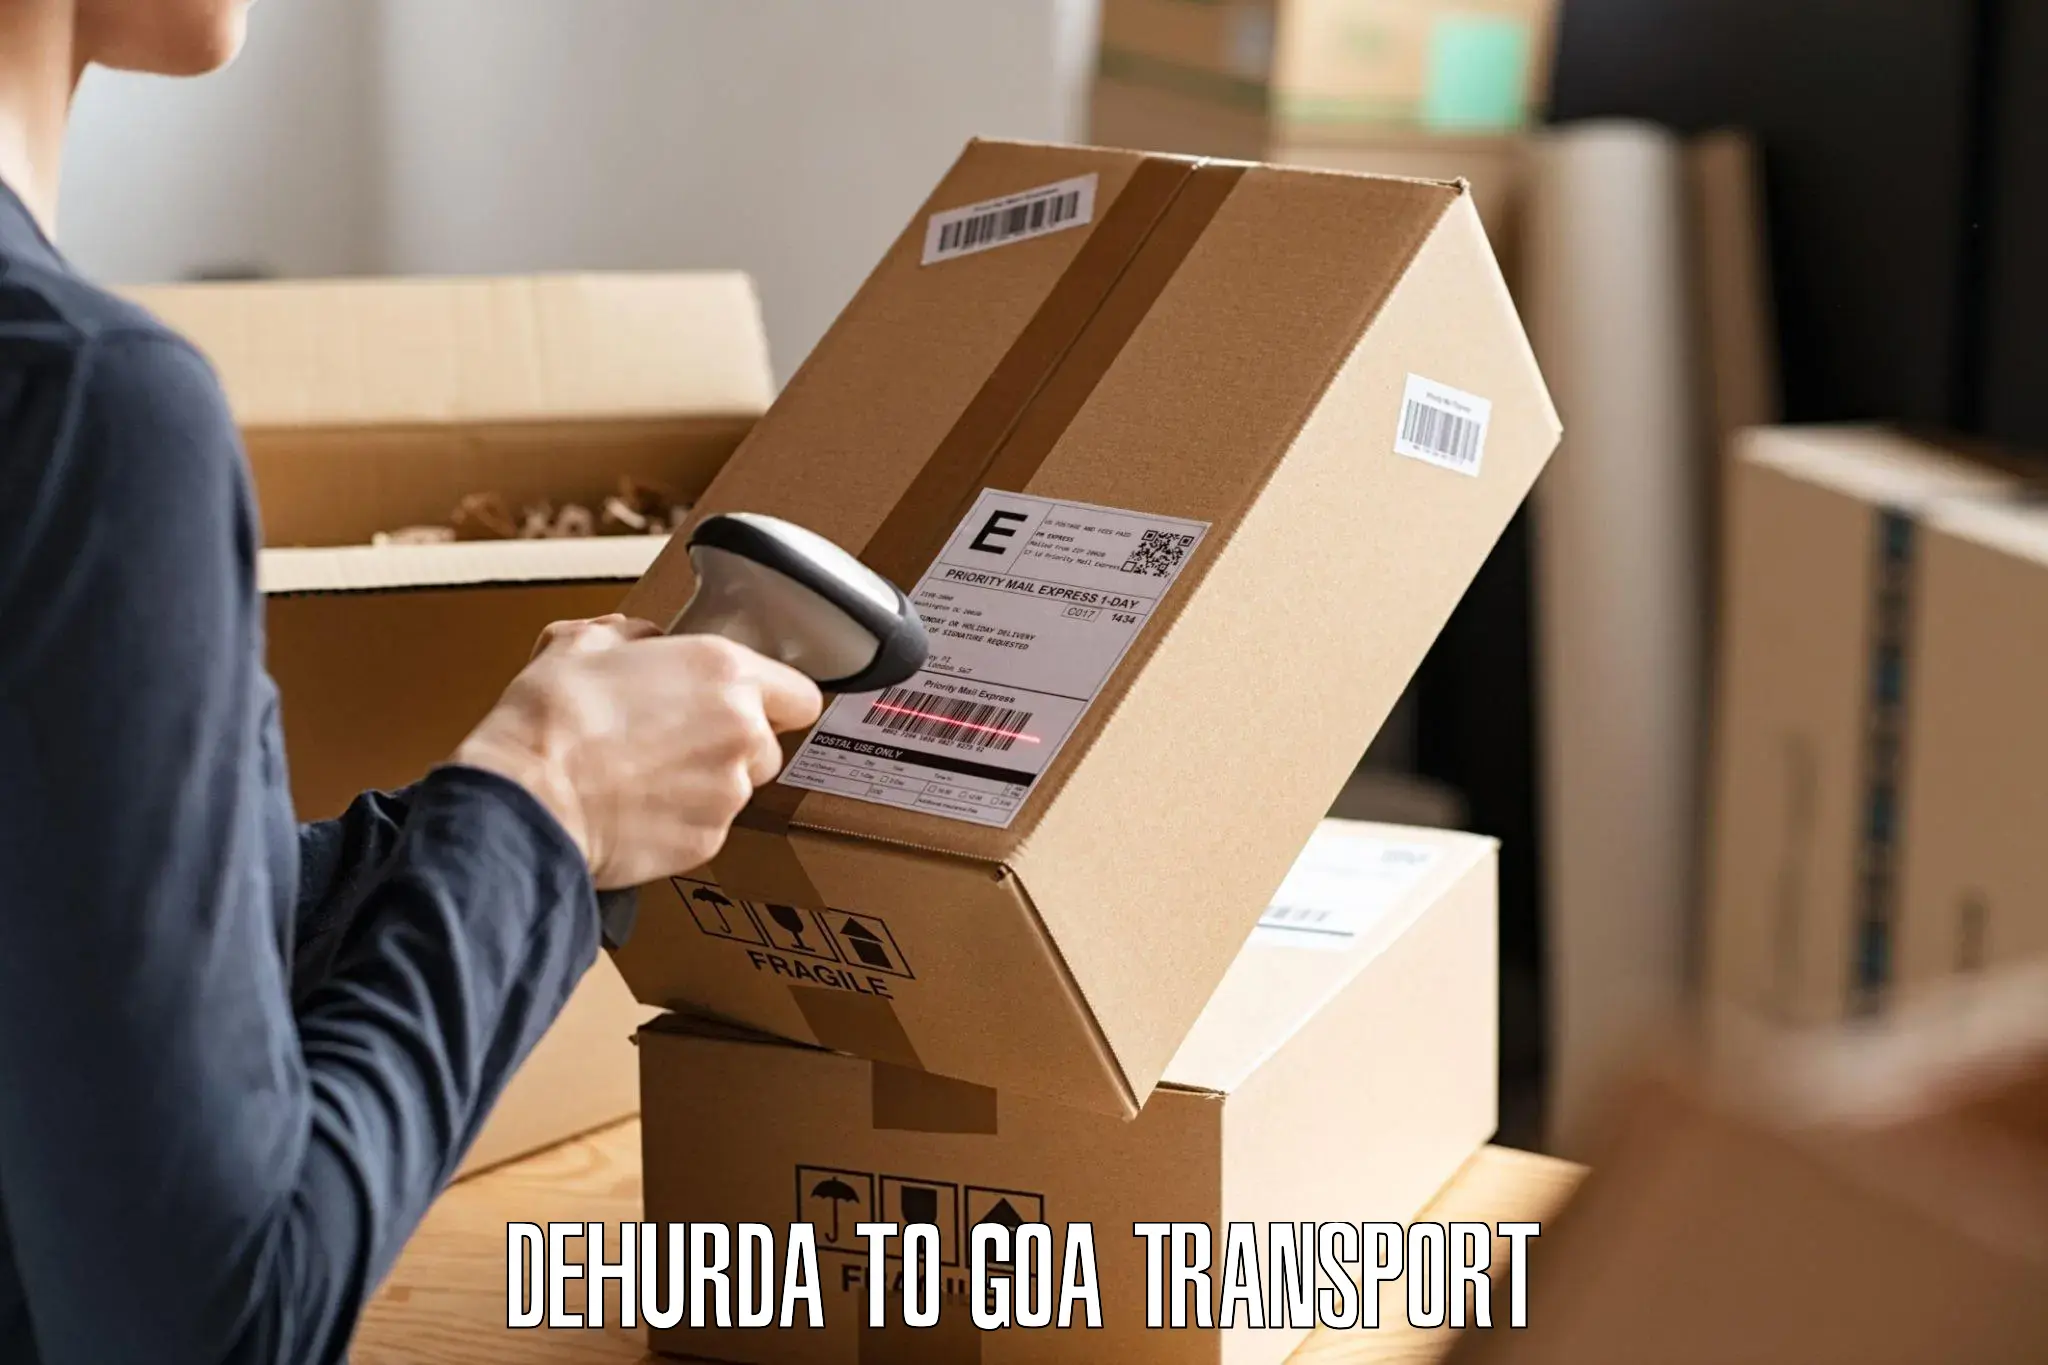 Daily transport service Dehurda to Panjim